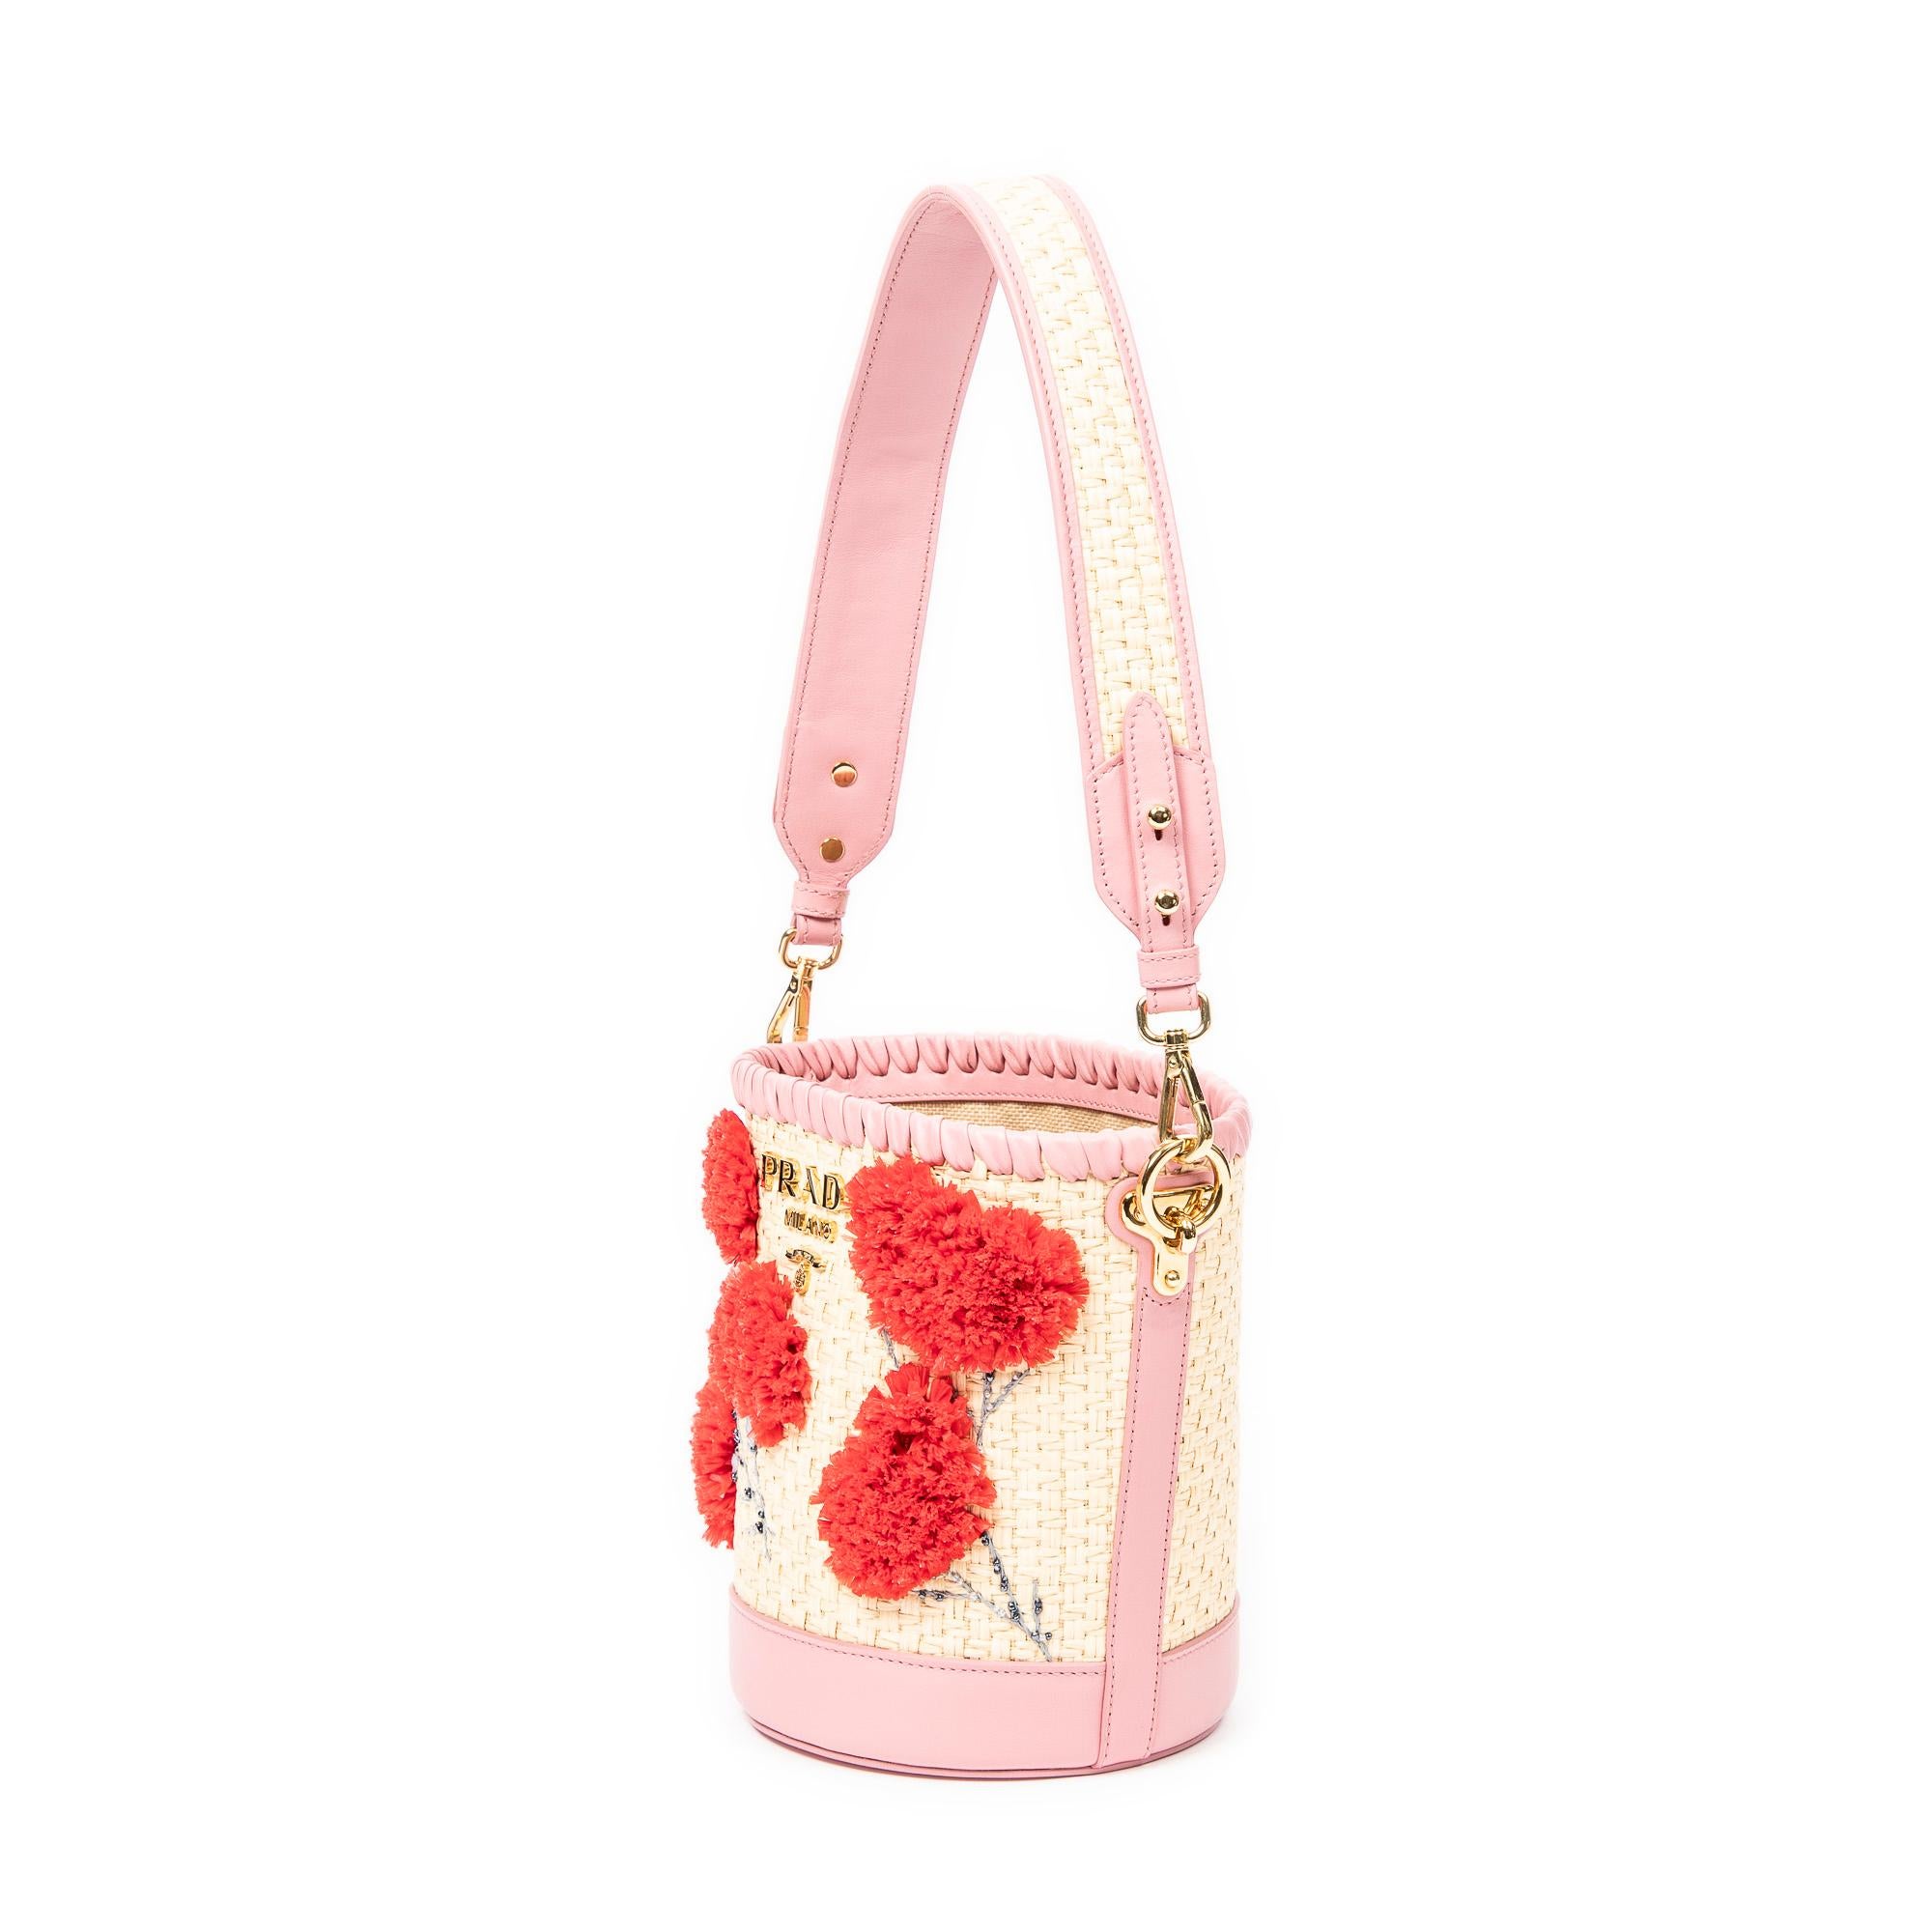 Le sac Bucket en raphia brodé rose de Prada est d'une élégance décontractée avec ses ferrures dorées et son ouverture qui mène à un intérieur spacieux en toile tissée doté d'une seule poche zippée.

SPÉCIFICATIONS
Longueur : 8